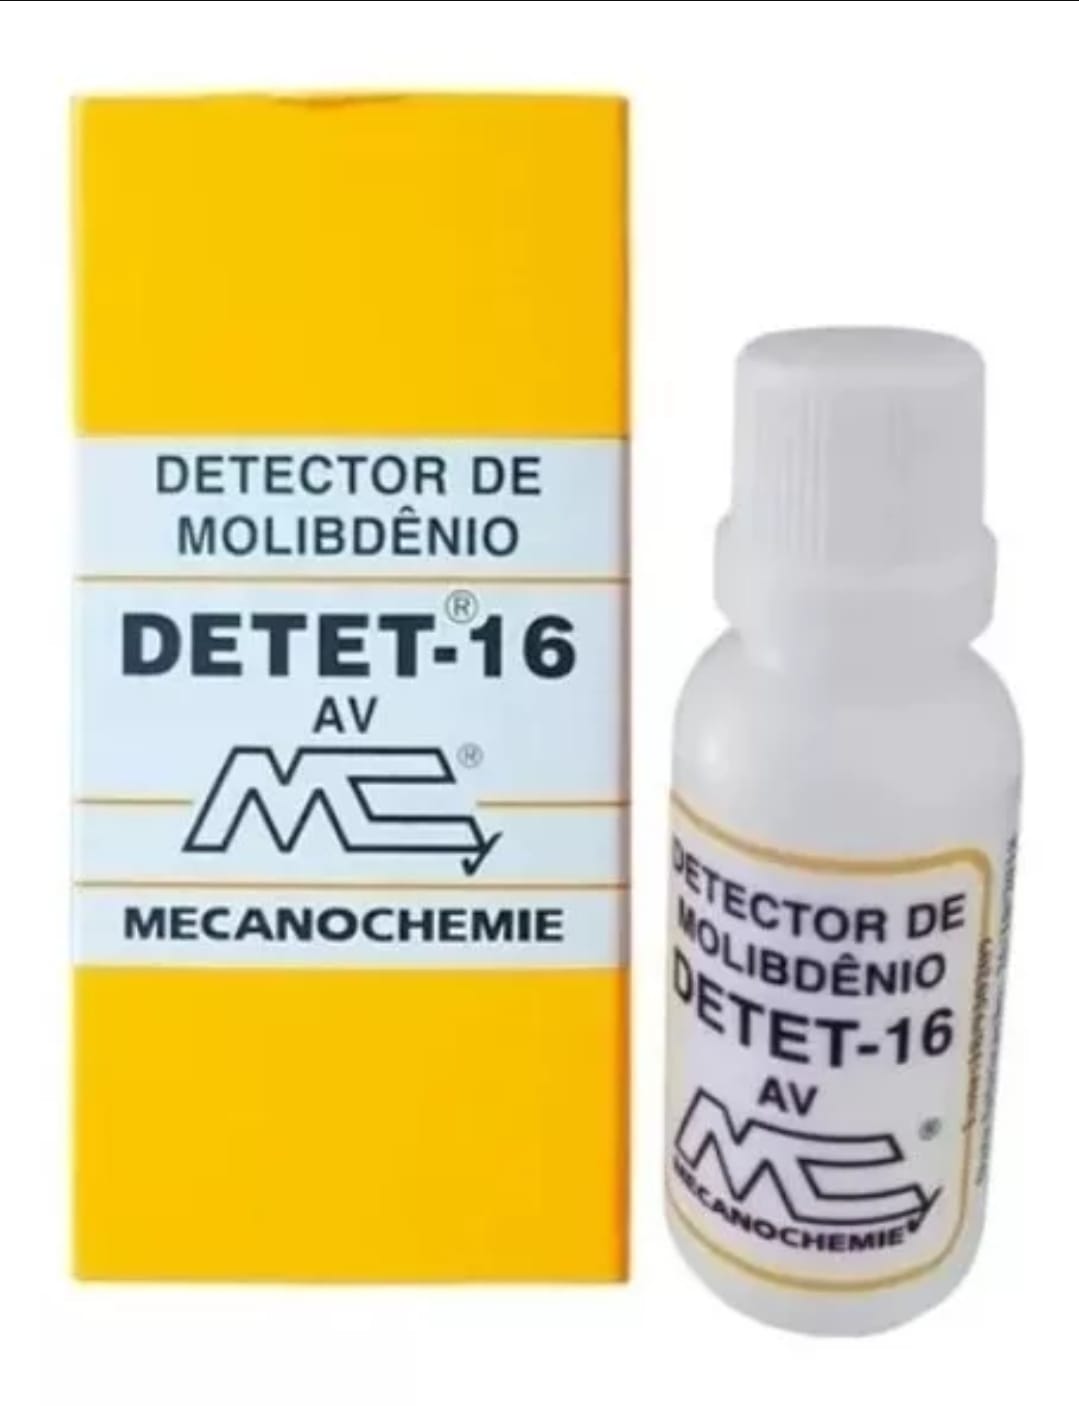 detector-de-molibdenio-detet-16